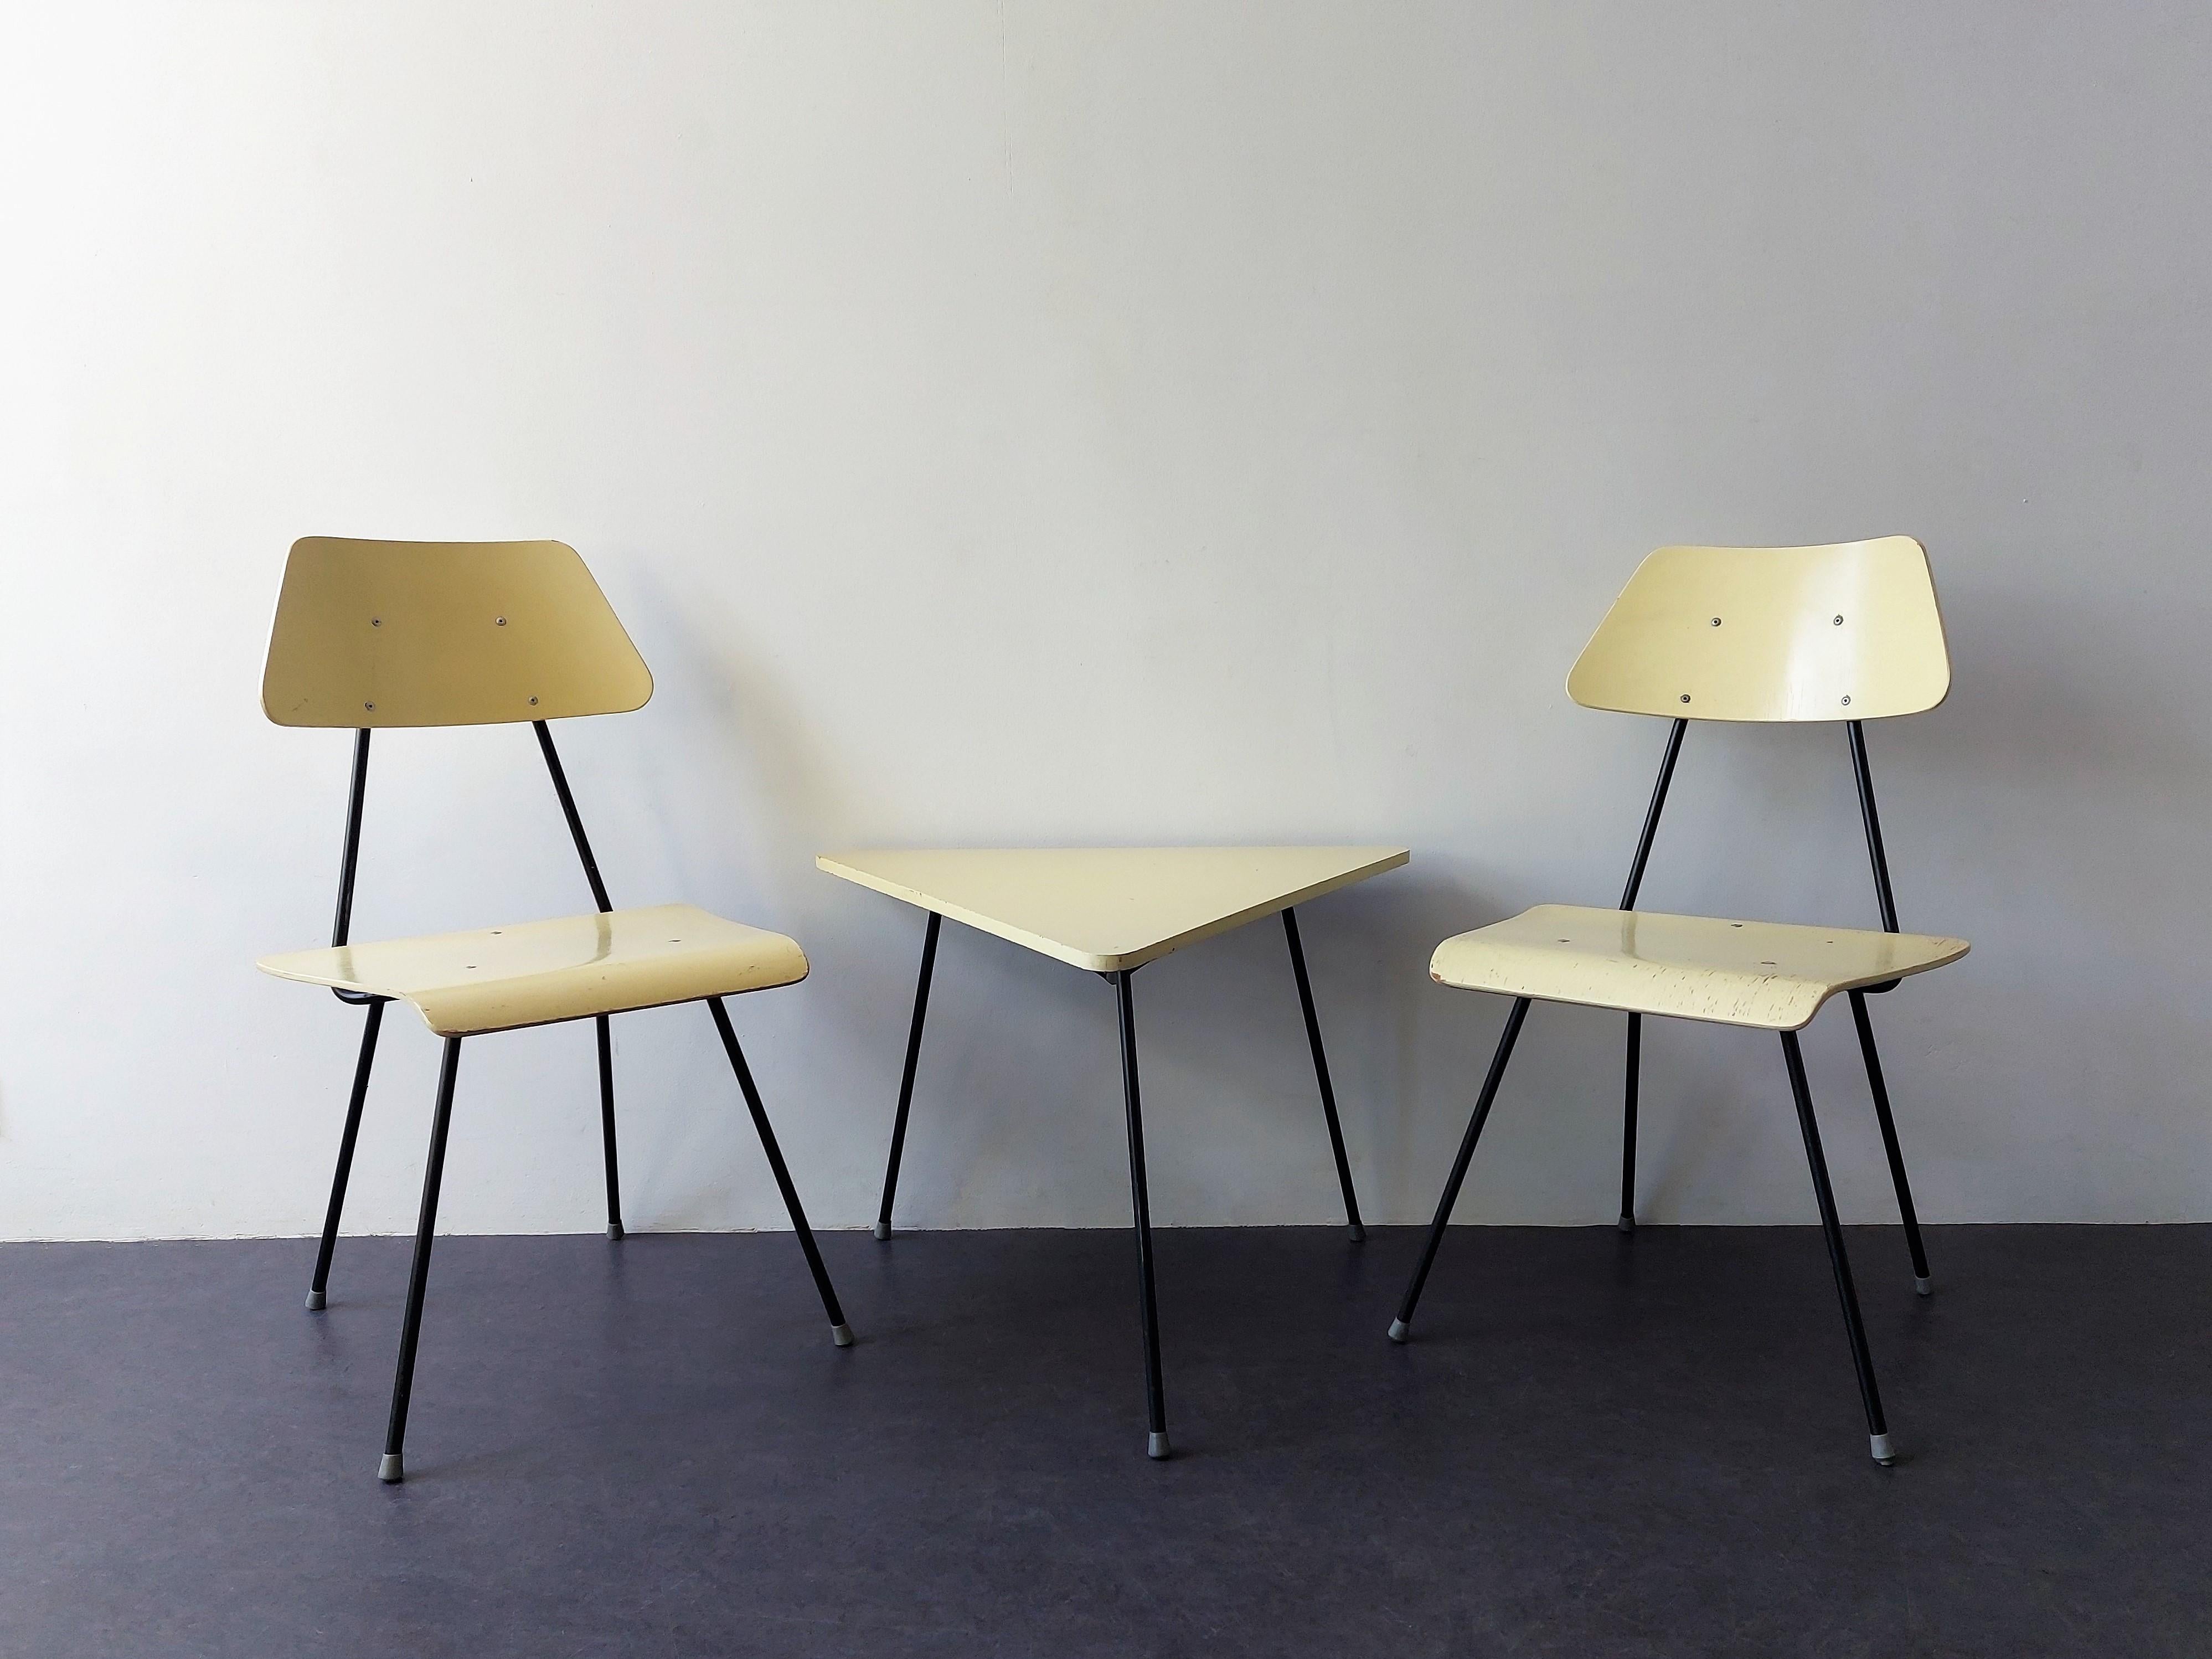 Ces chaises et tables latérales rares ont été fabriquées pour l'ancien et célèbre fabricant de lits néerlandais DICO dans les années 1950. Il est très probable qu'il s'agisse également d'un dessin de Rob Parry, car il présente le même style élégant,